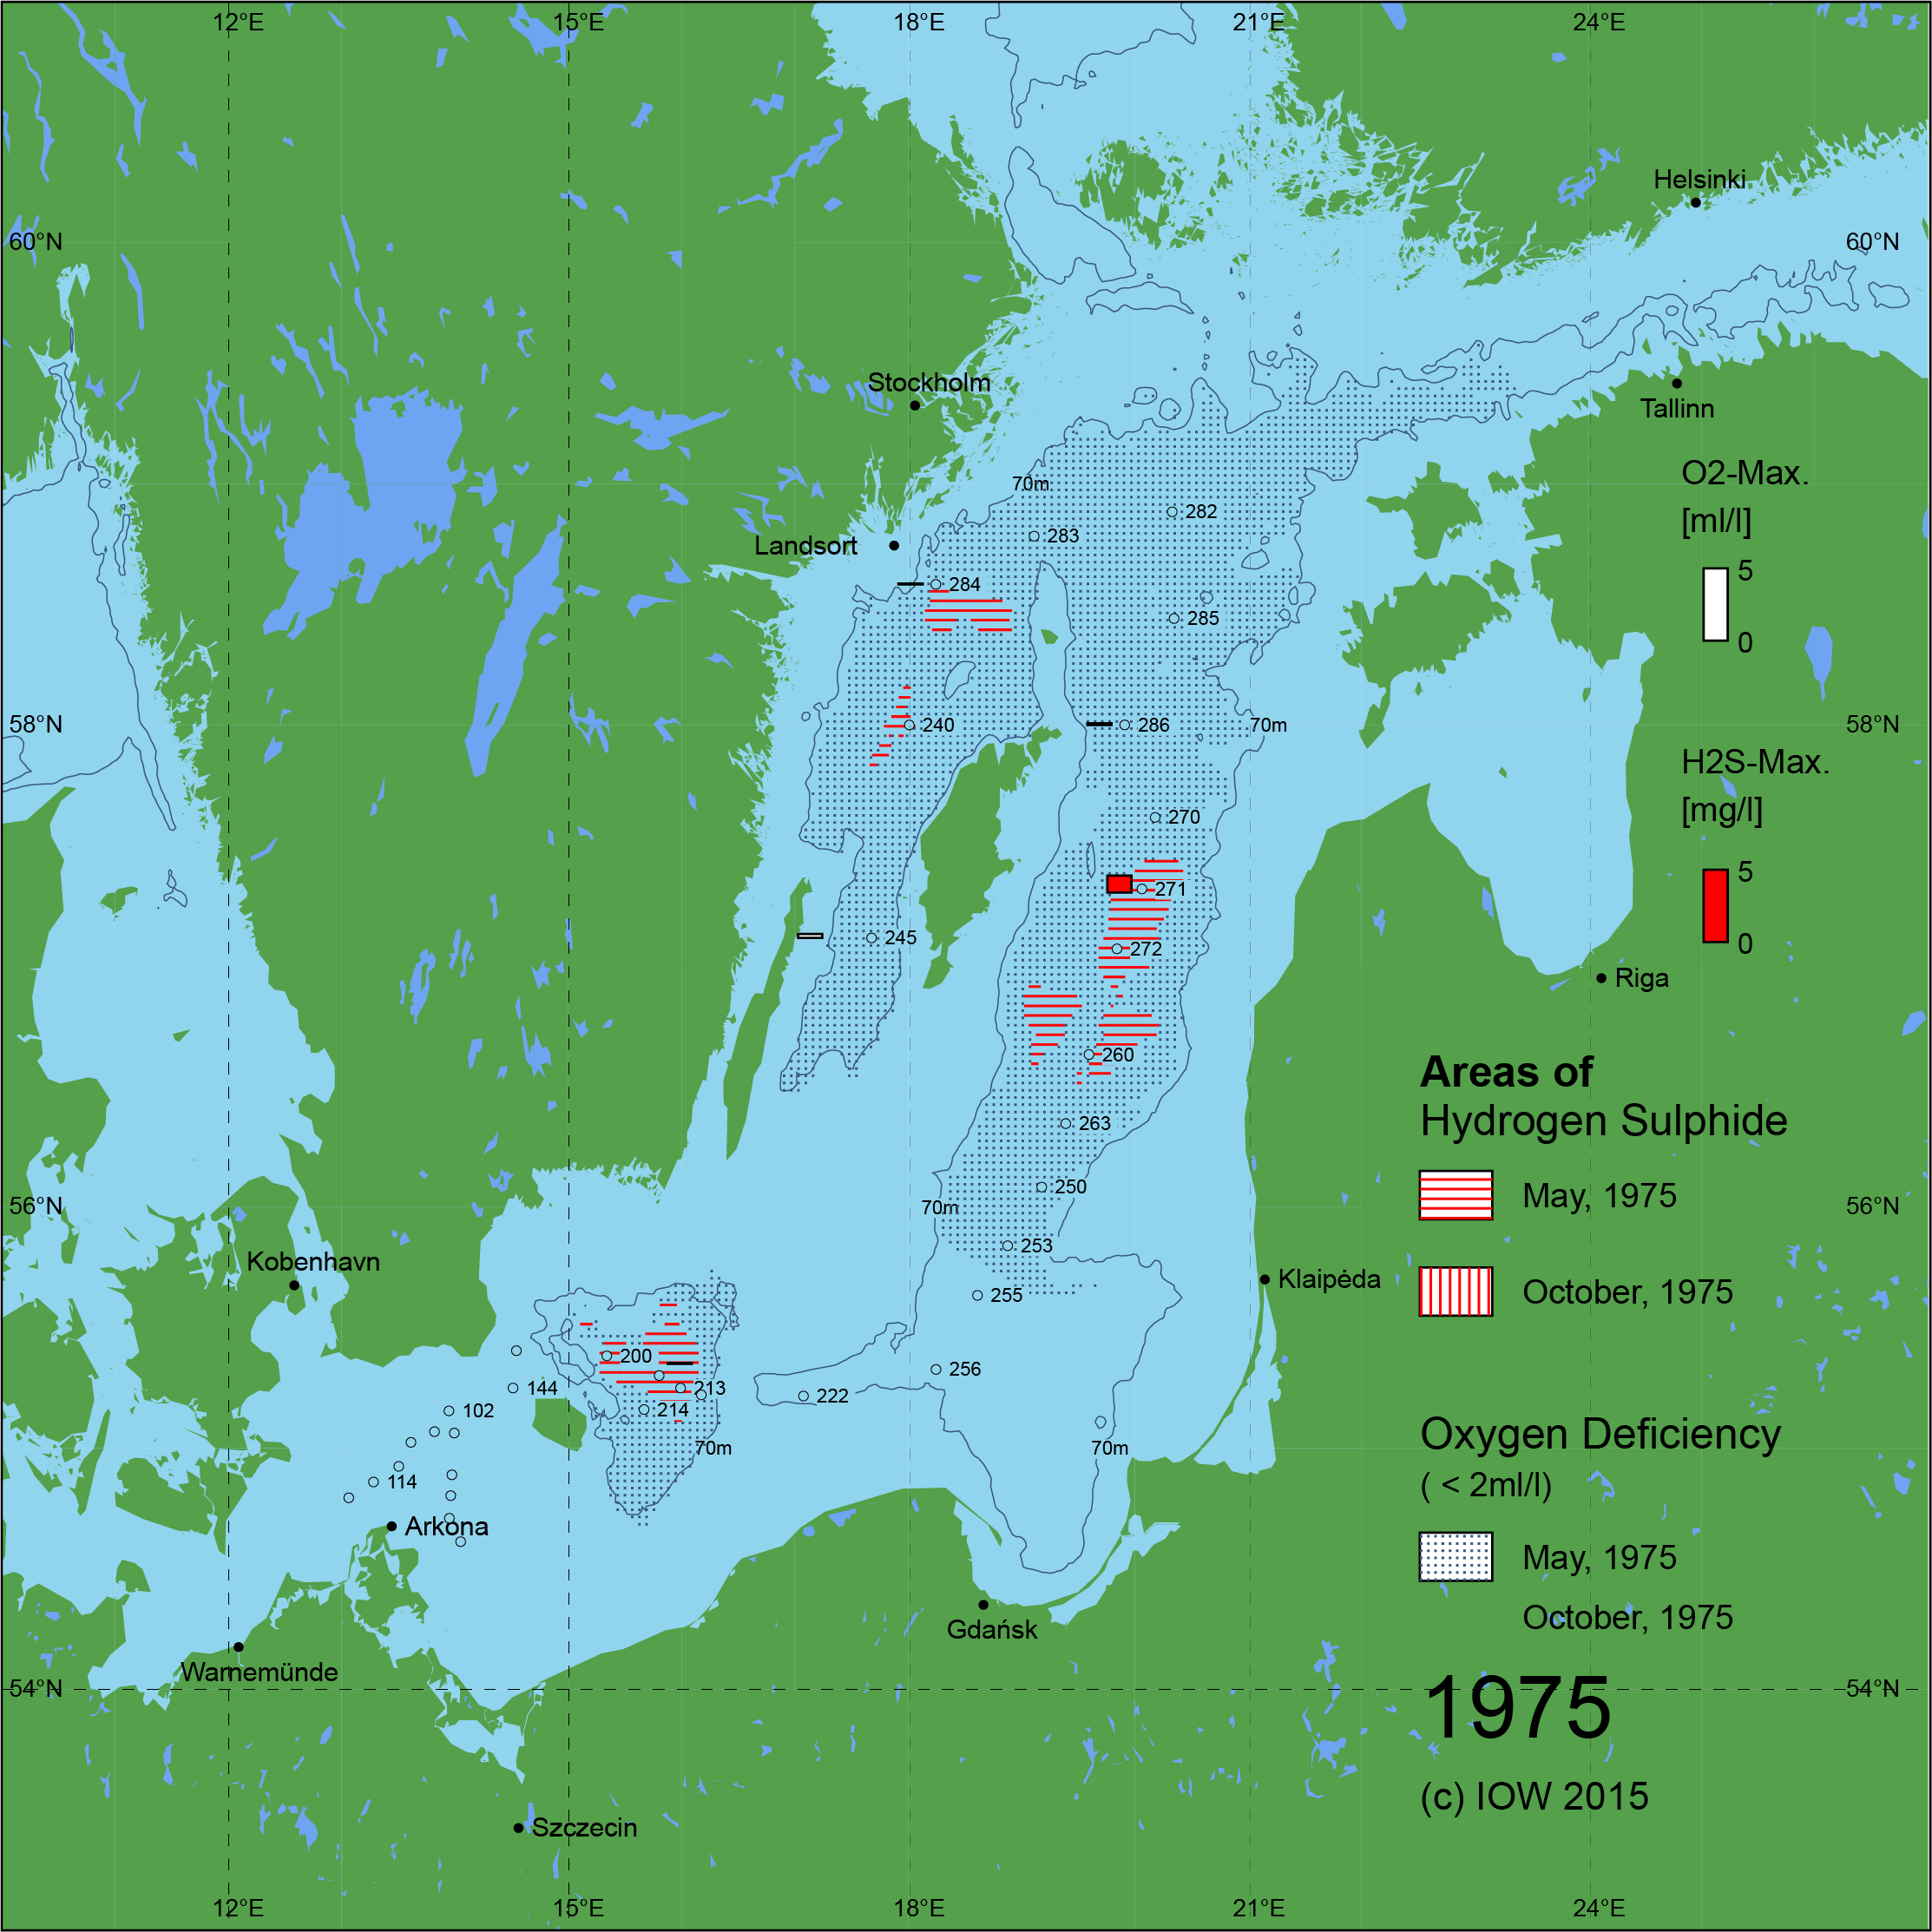 Sauerstoffarme und sauerstofffreie Gebiete in der Ostsee - 1975